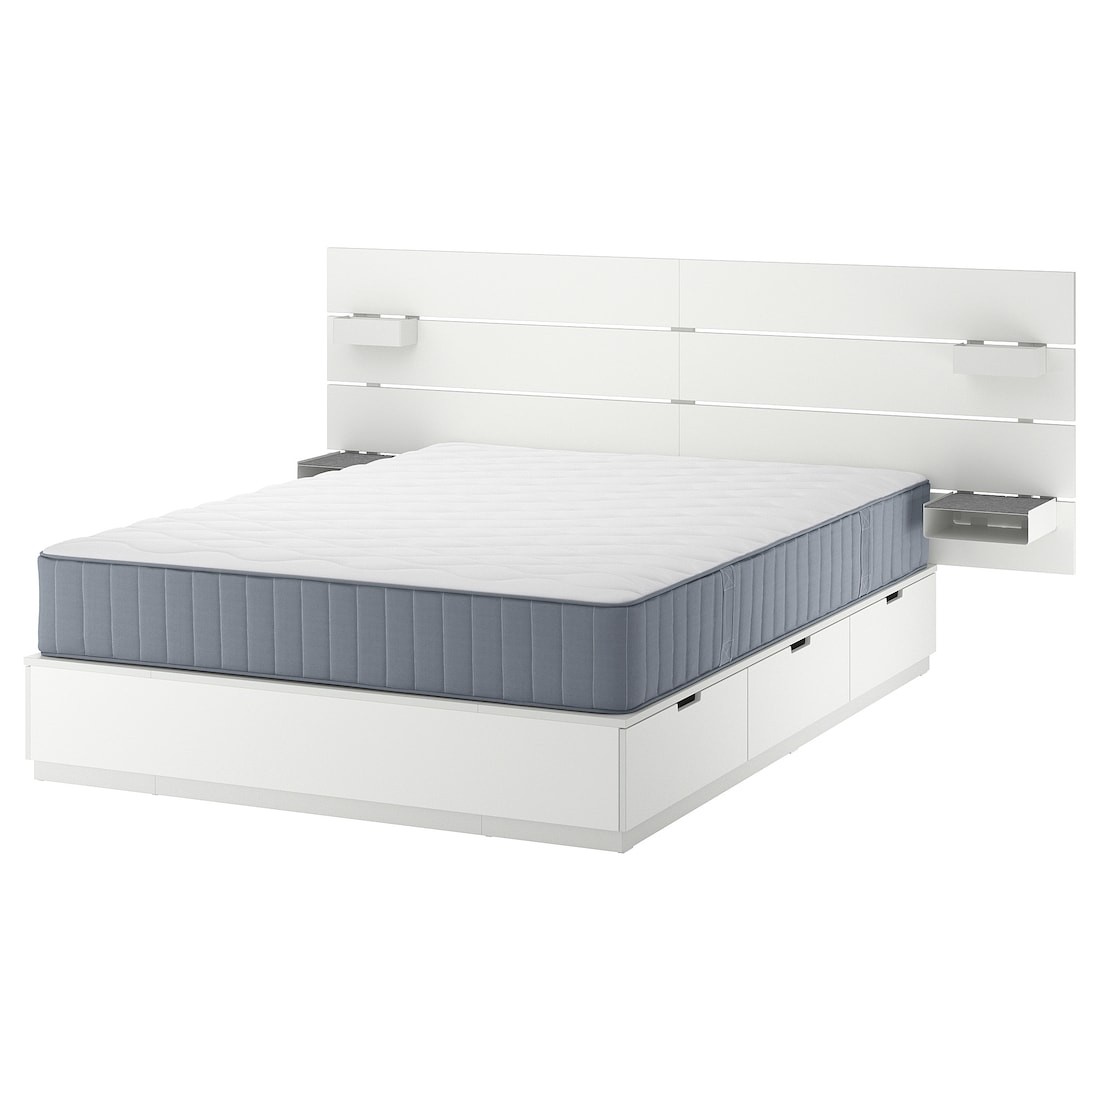 NORDLI Кровать с контейнером и матрасом, с изголовьем белый / Vågstranda жесткий, 140x200 см